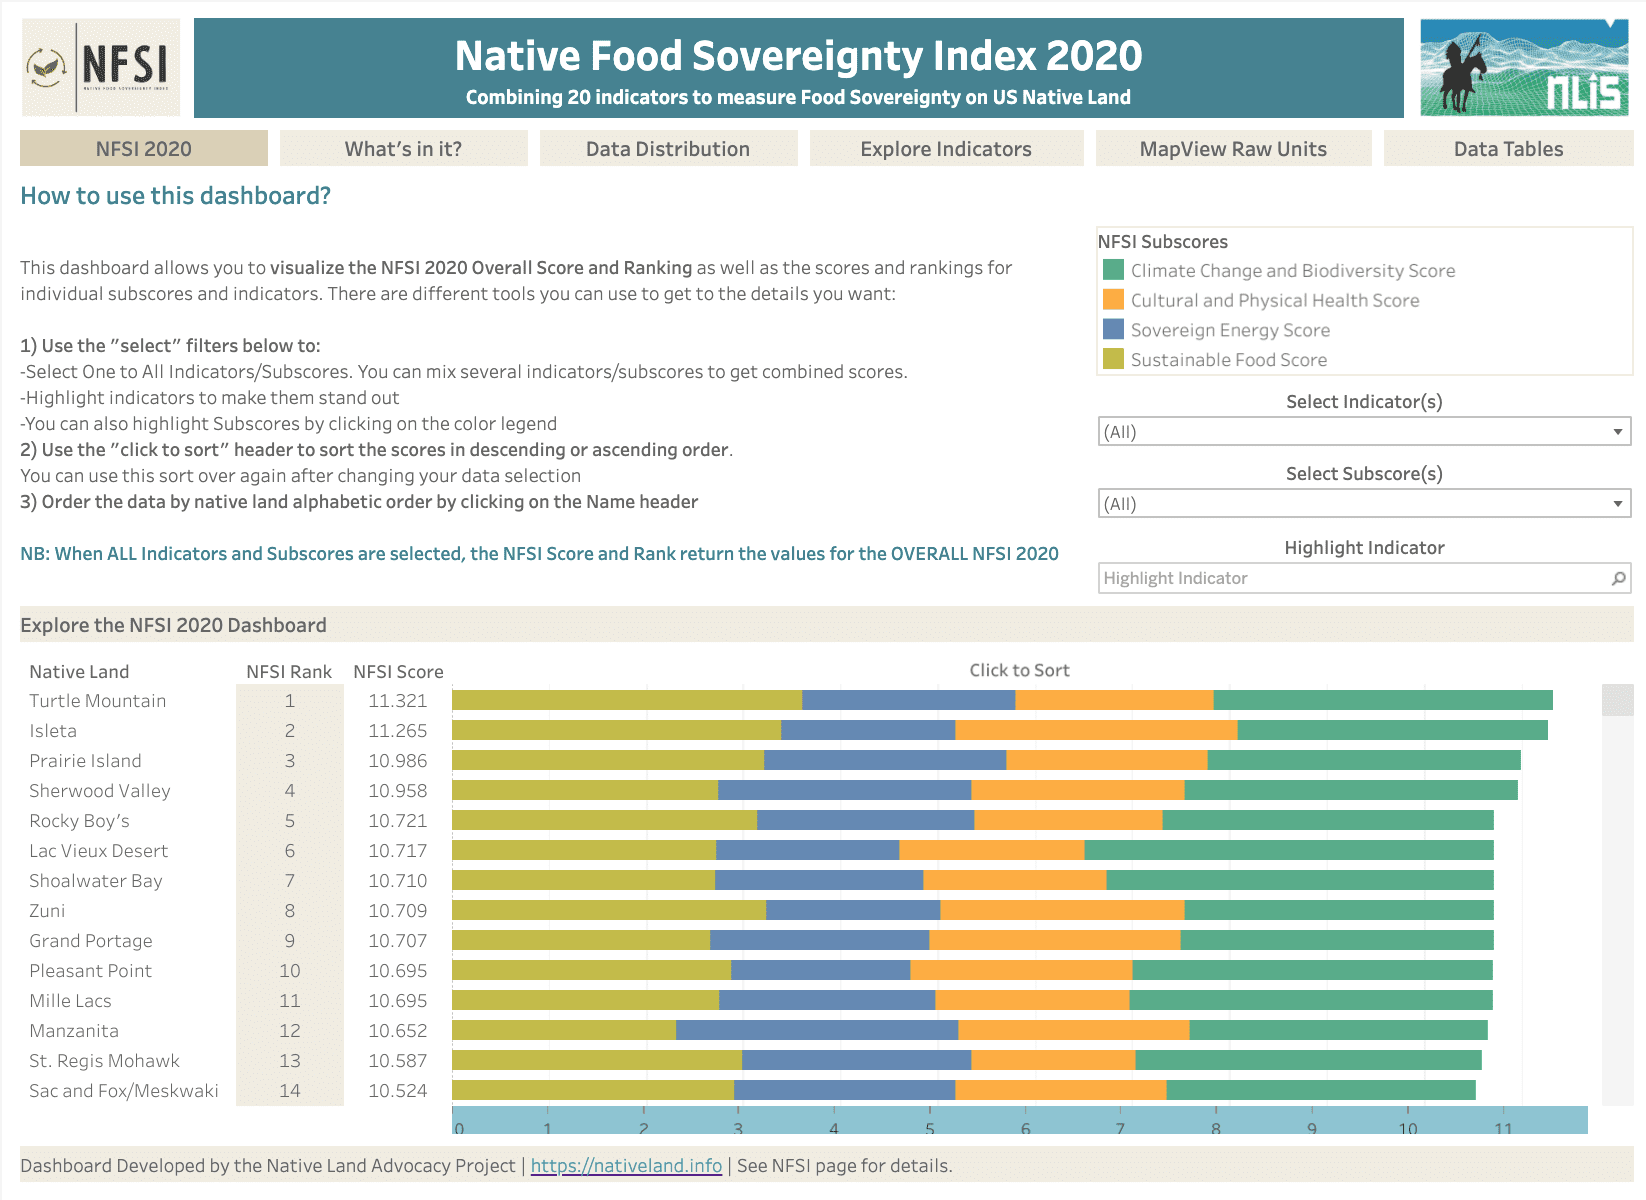 Food-System Transition Index for US Native Lands